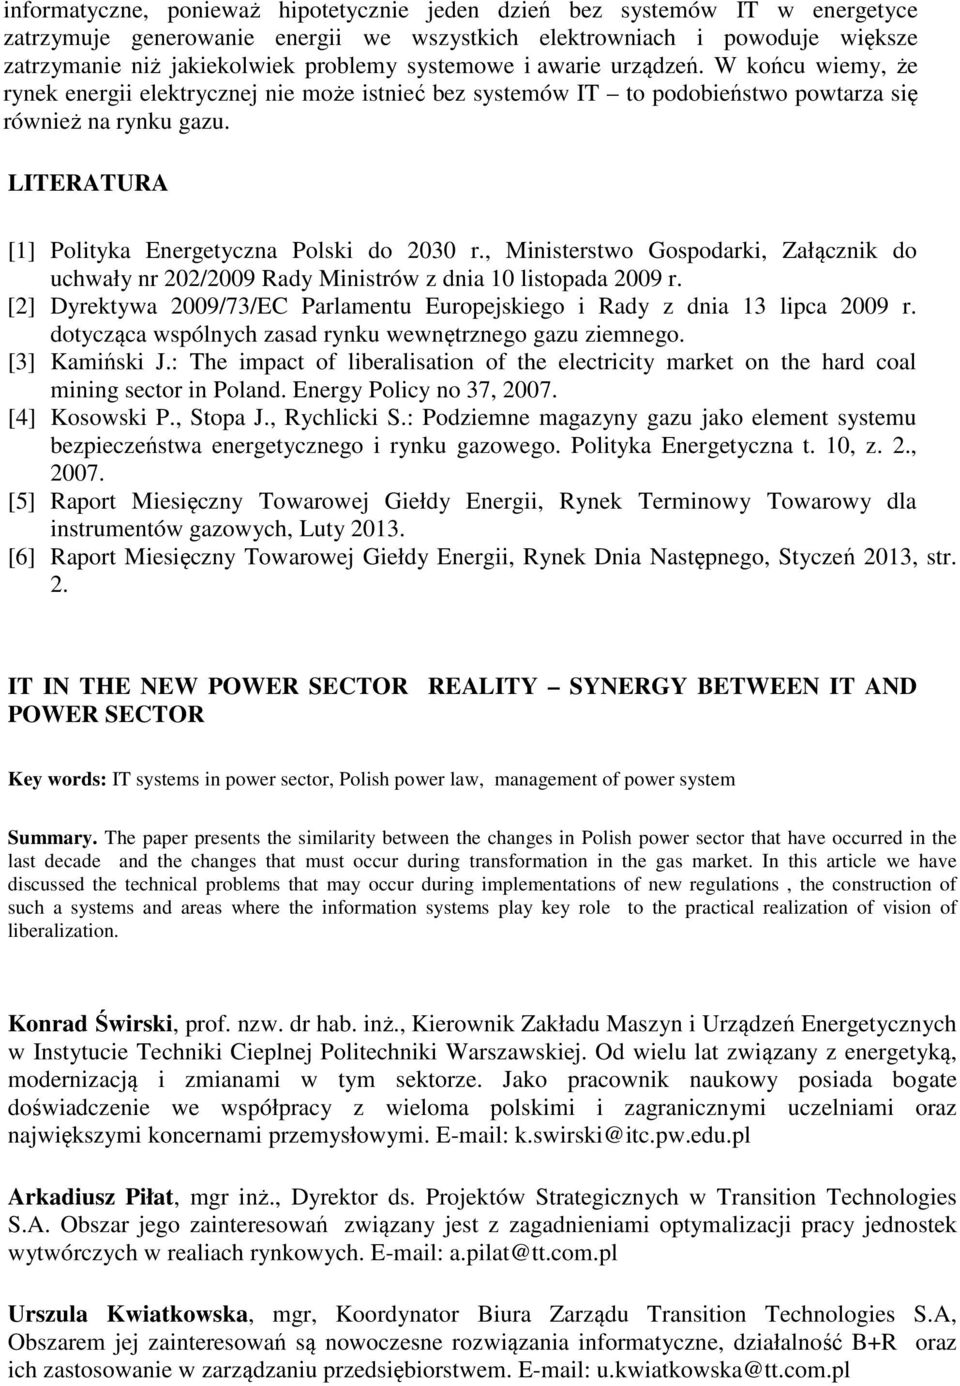 LITERATURA [1] Polityka Energetyczna Polski do 2030 r., Ministerstwo Gospodarki, Załącznik do uchwały nr 202/2009 Rady Ministrów z dnia 10 listopada 2009 r.